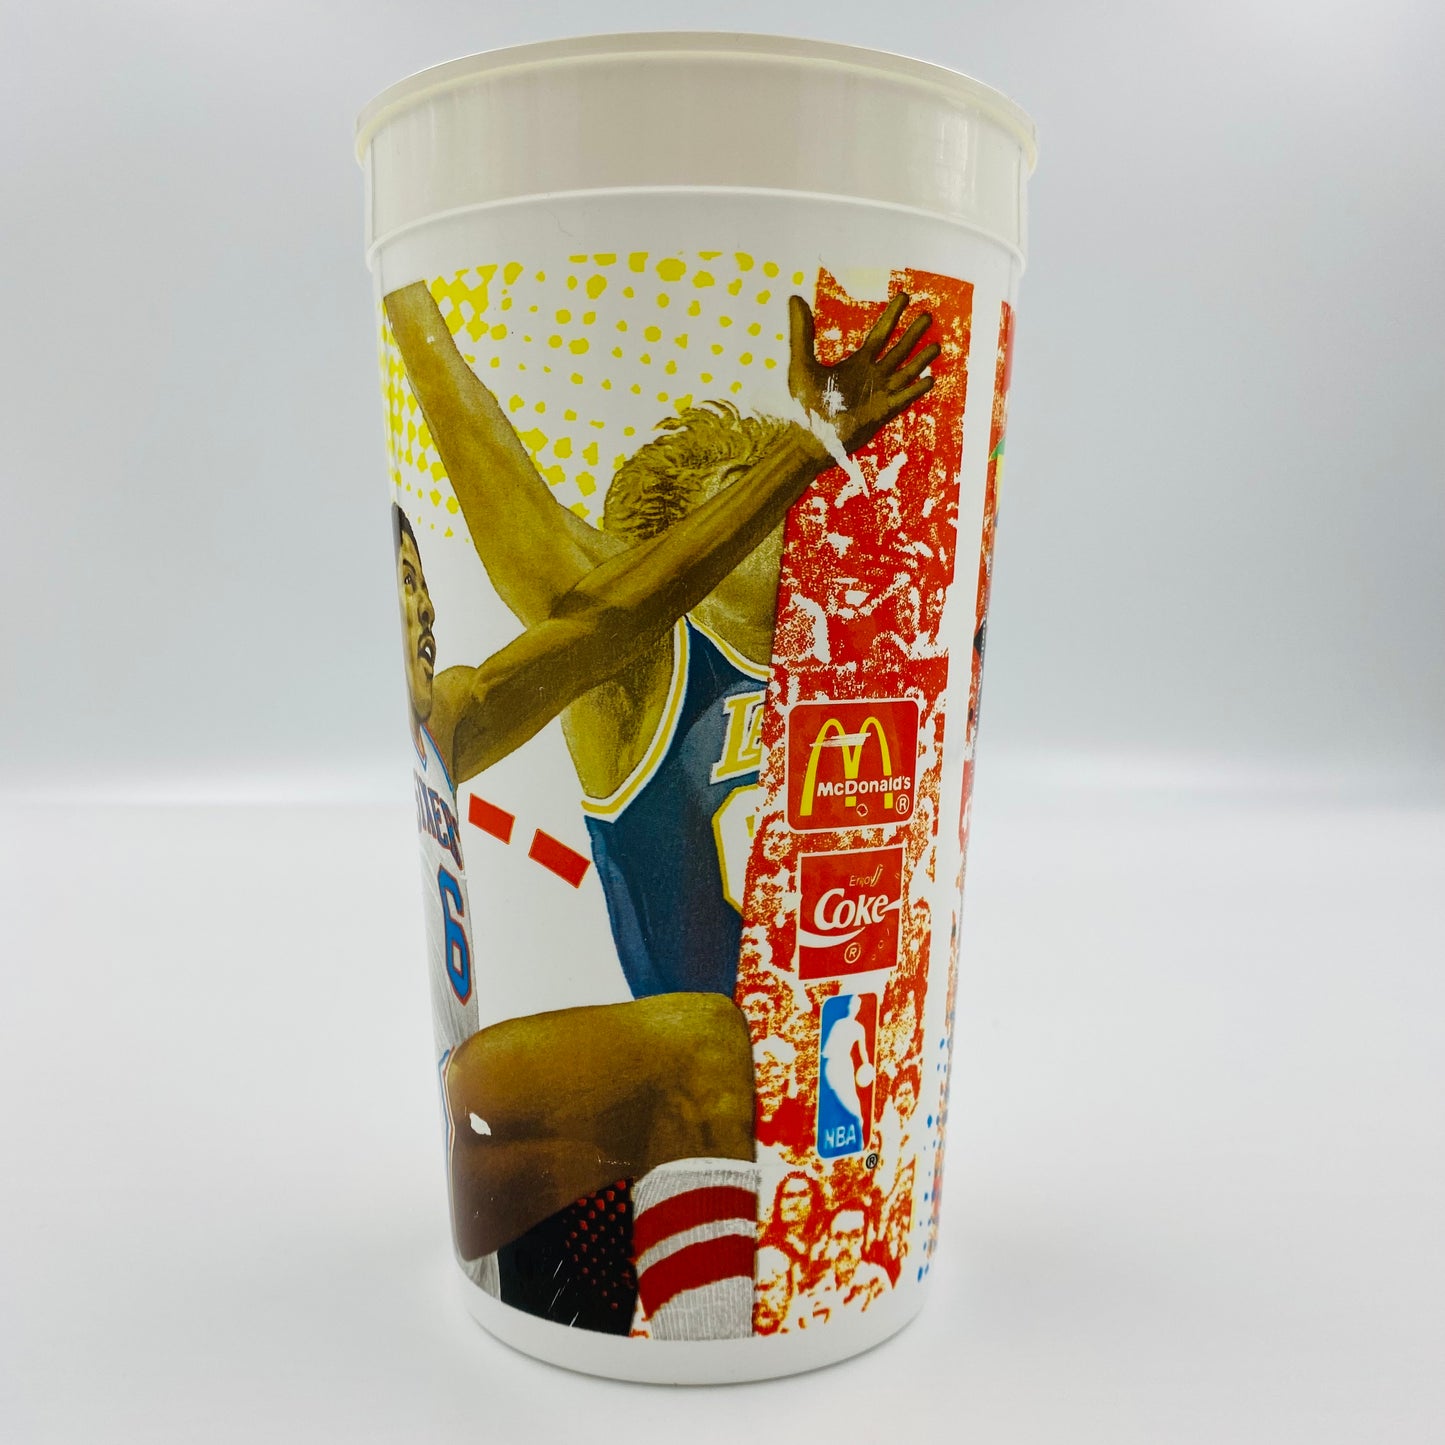 NBA Nothing But Net MVP’s Julius “DR. J” Erving 32oz plastic cup (1994) McDonald's